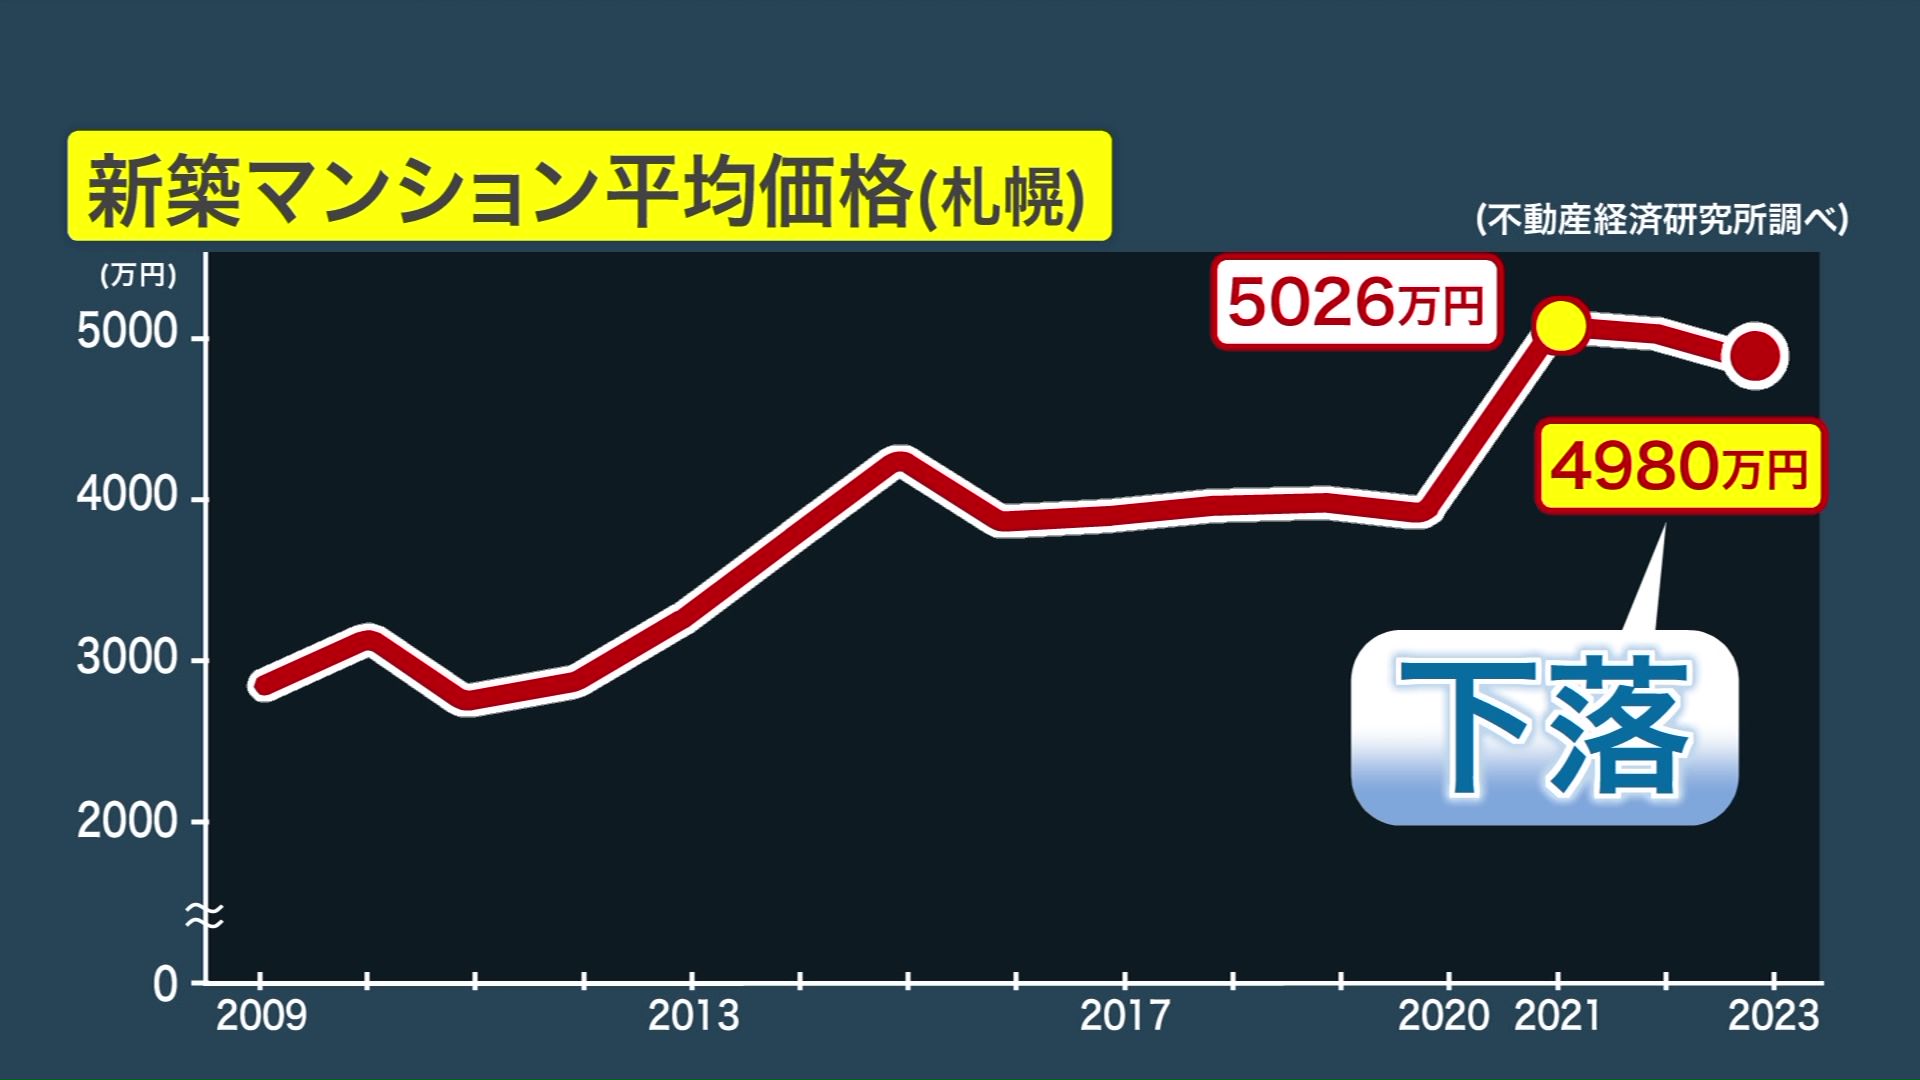 平均価格は2021年には5000万円を突破したが2023年に下落へ